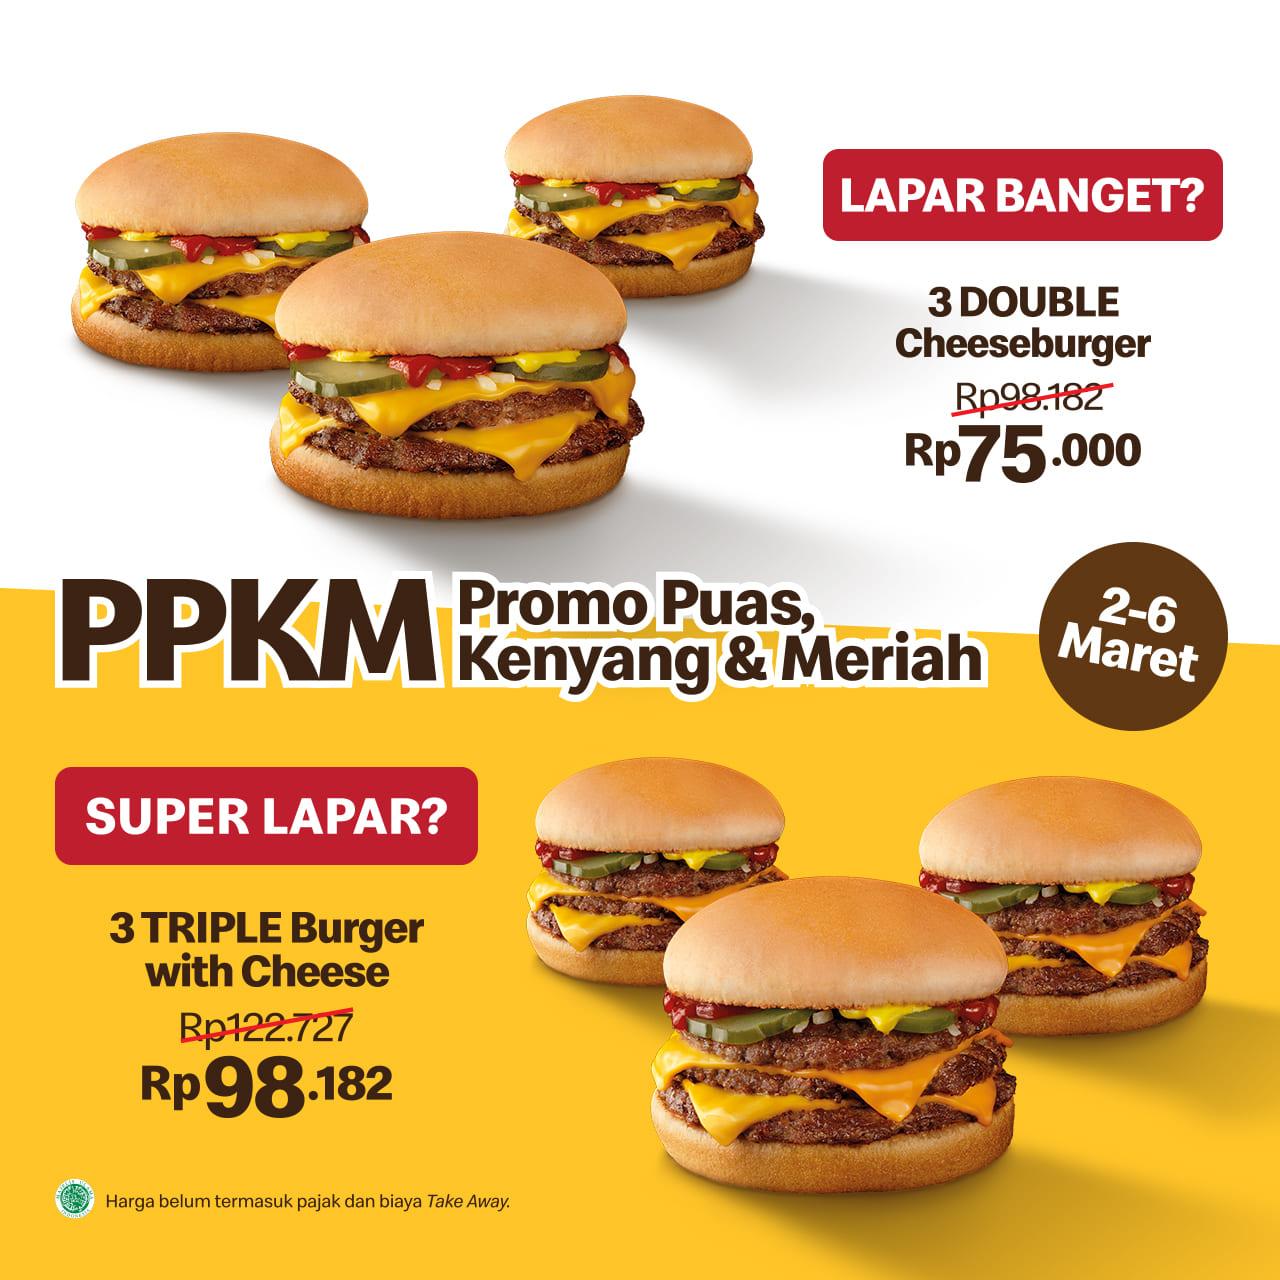 Promo McDonalds PPKM - Harga Spesial untuk Paket 3 DOUBLE Cheeseburger atau 3 TRIPLE Burger with Cheese